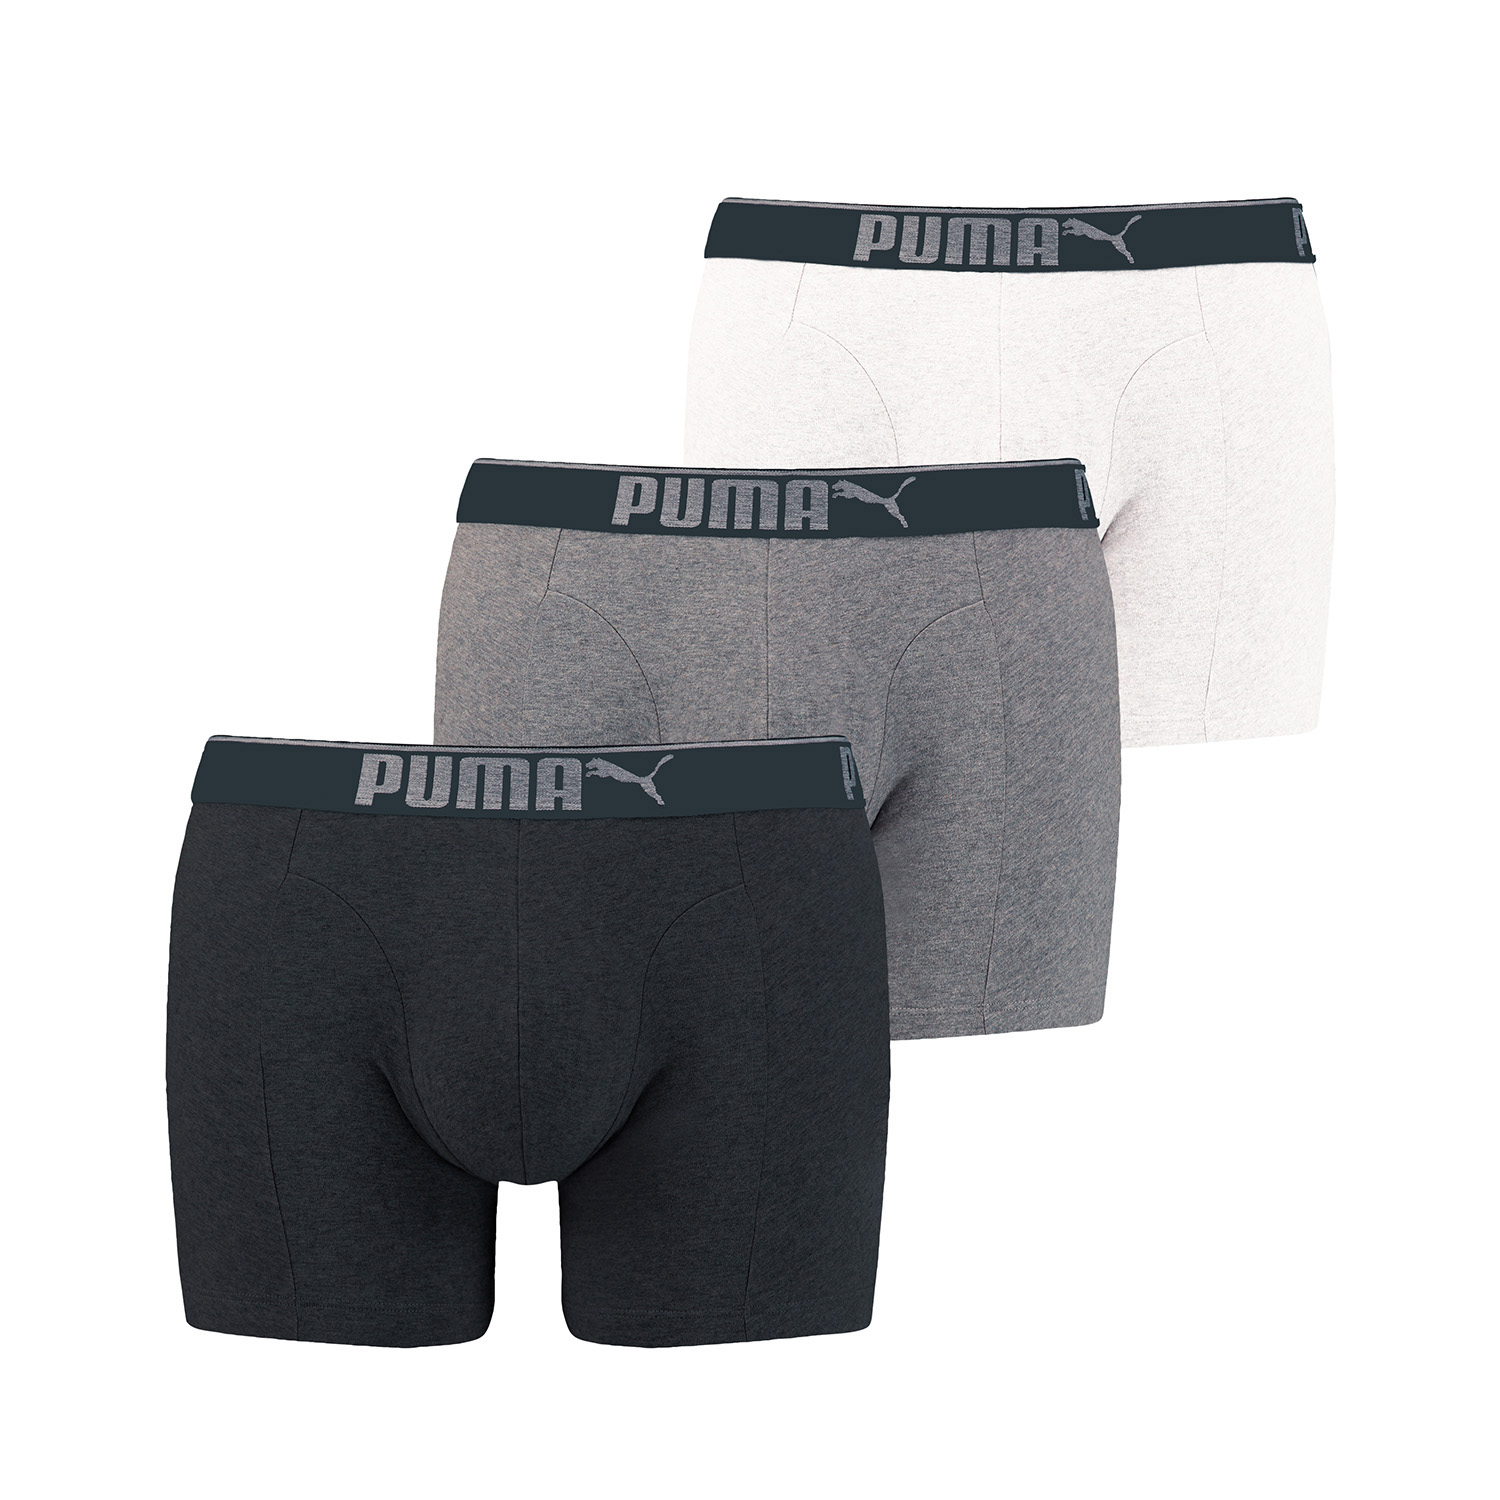 PUMA Herren Boxershort Lifestyle Sueded Cotton 6 er Pack, Farbe:325 - White/Grey/Black, Bekleidungsgröße:XXL